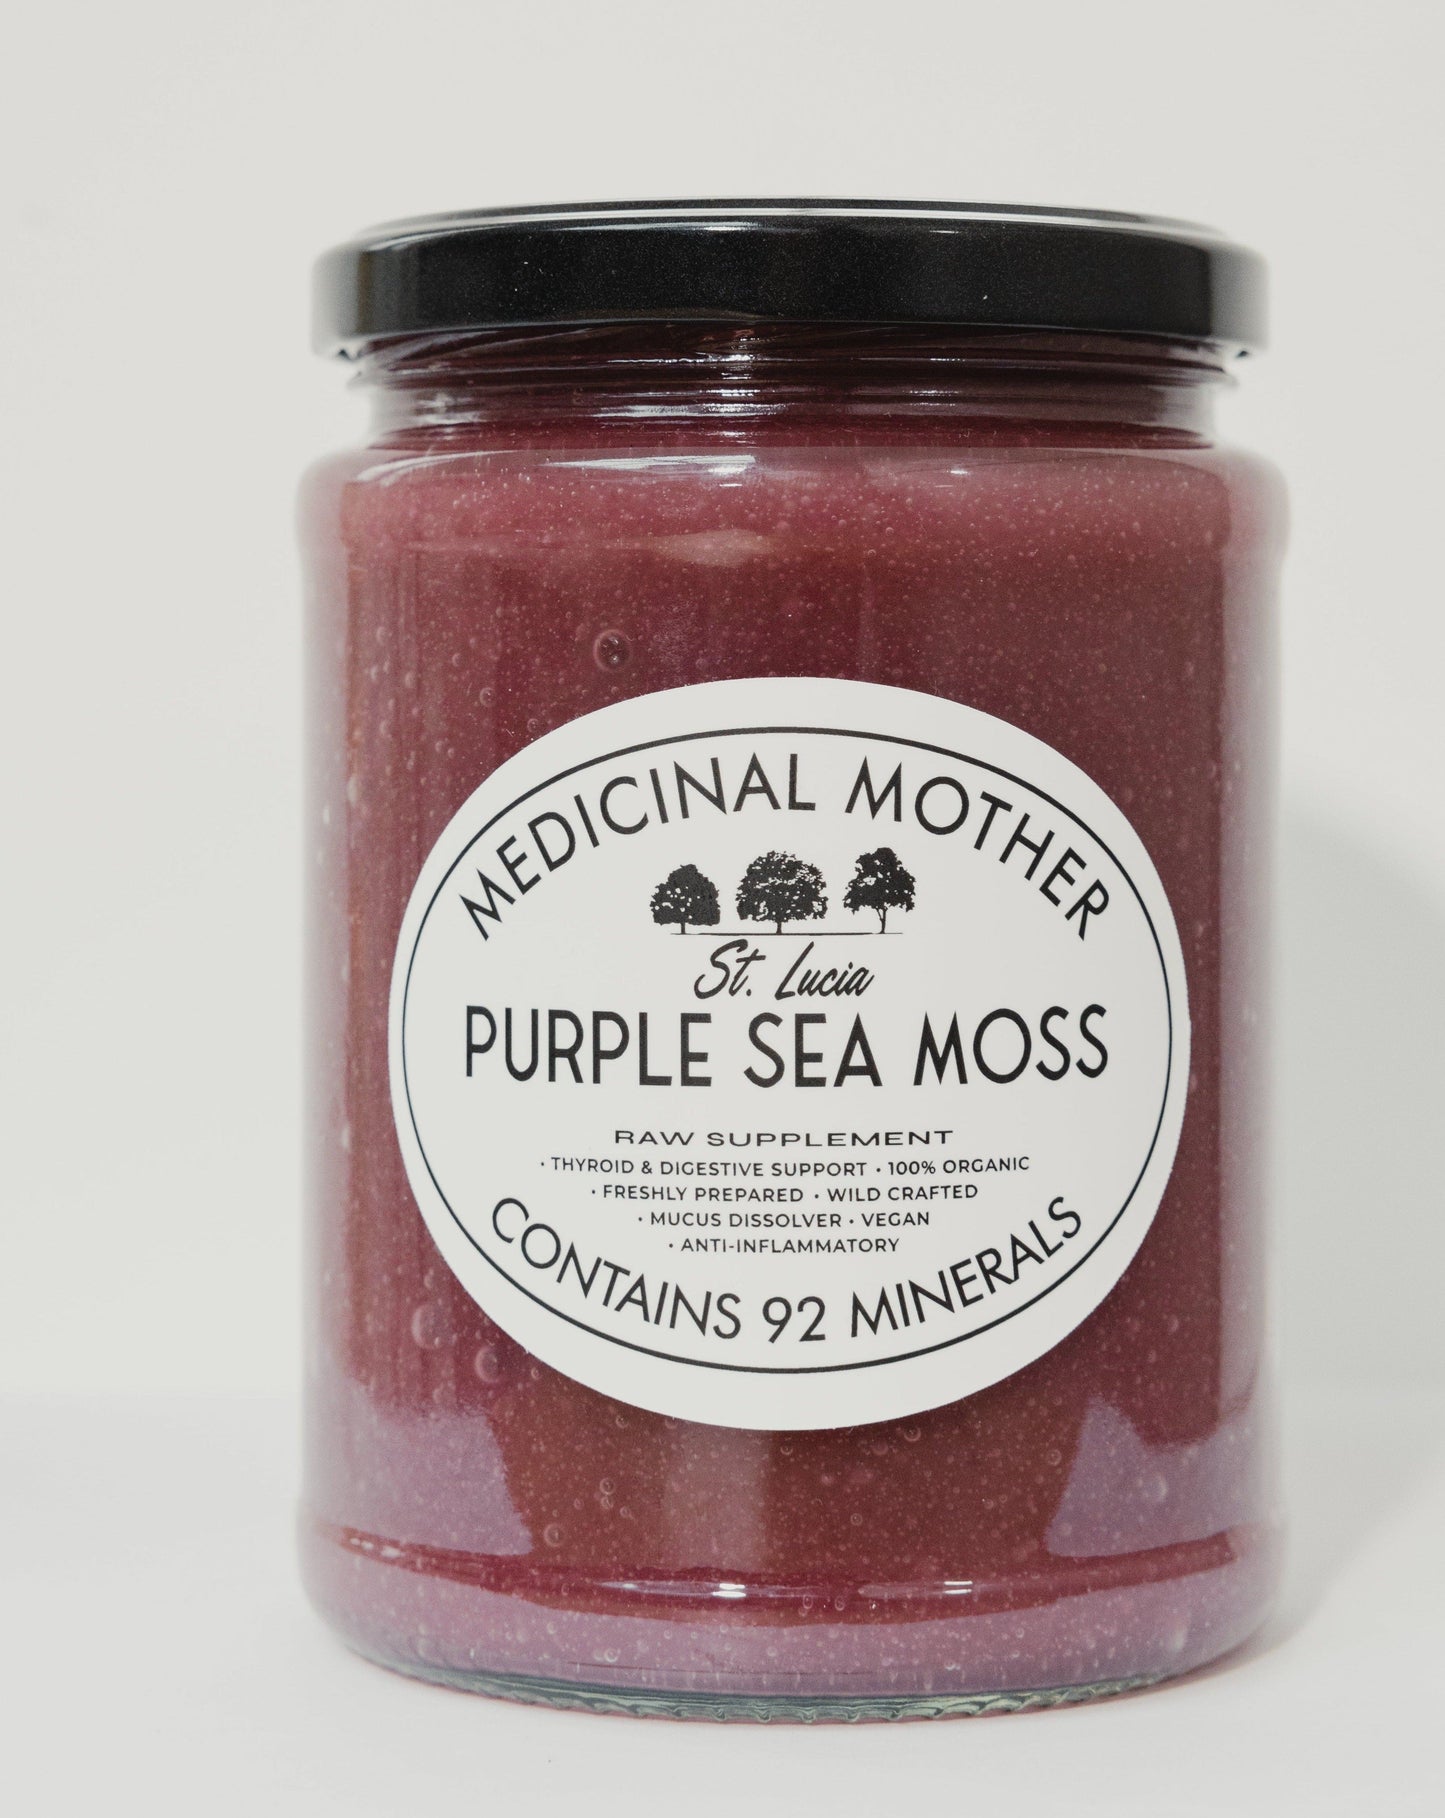 Purple sea moss gel